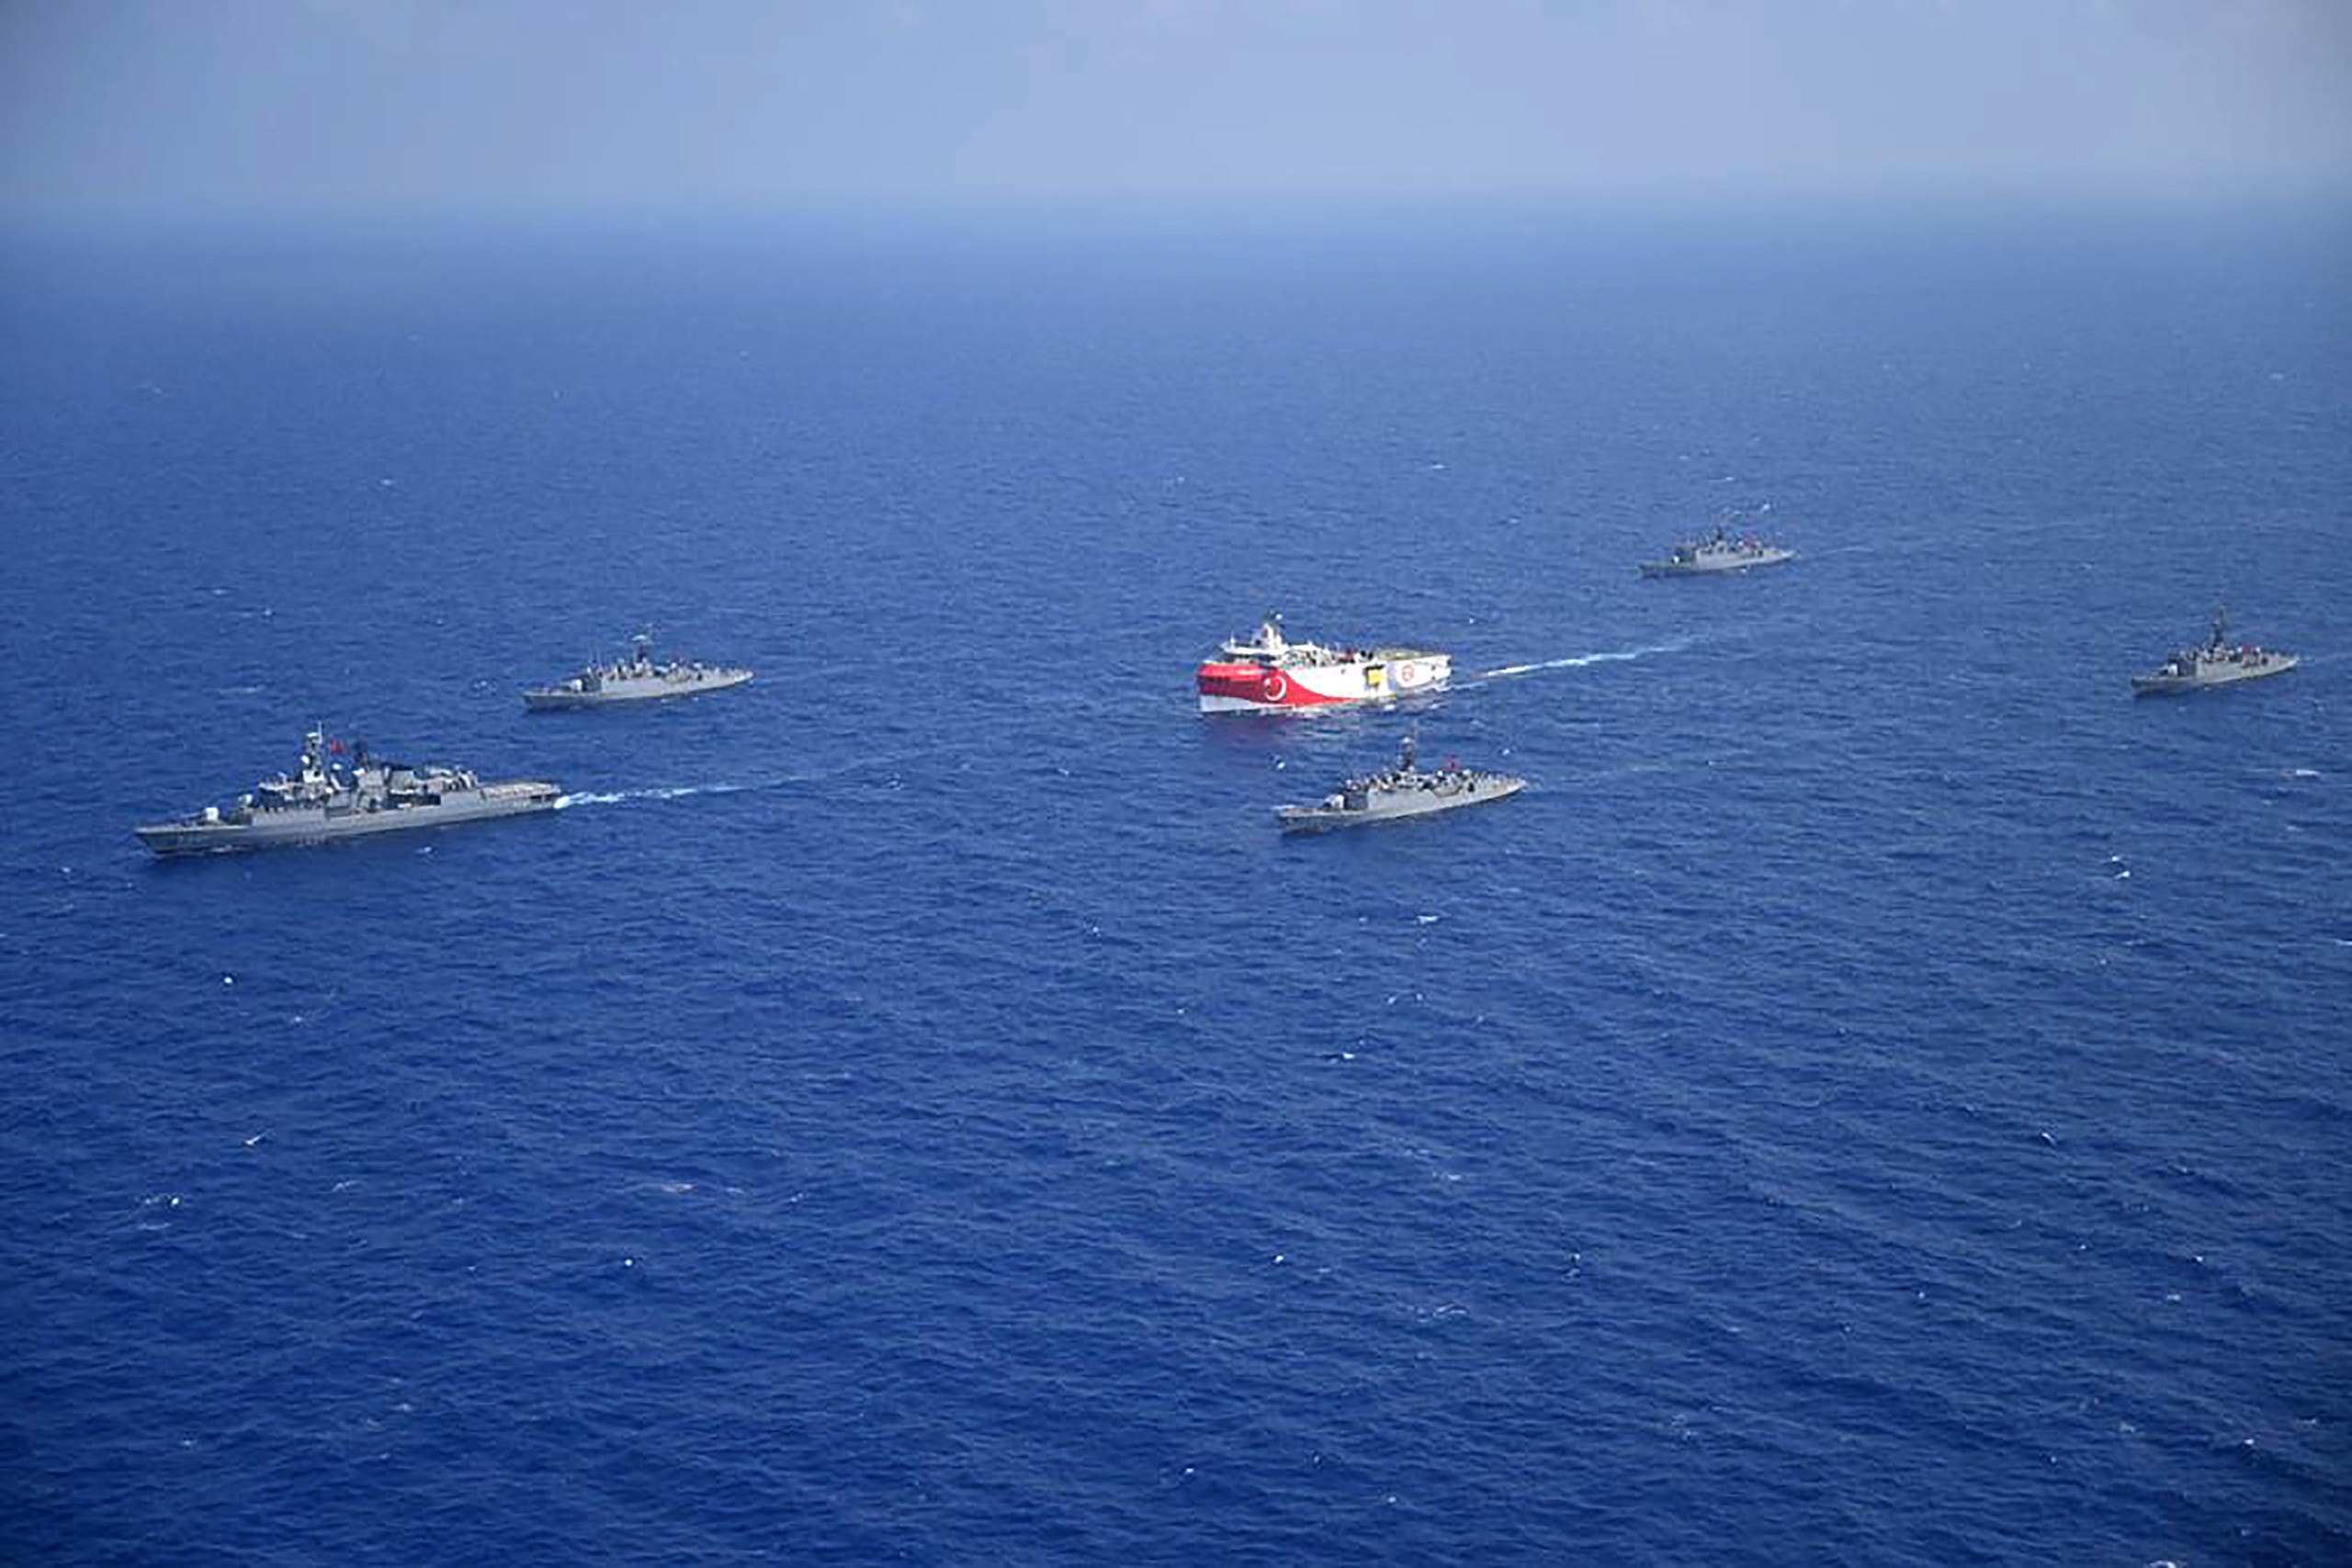 سفينة  عروج ريس ترافقها سفن البحرية التركية في البحر الأبيض المتوسط قبالة أنطاليا في 10 أغسطس 2020